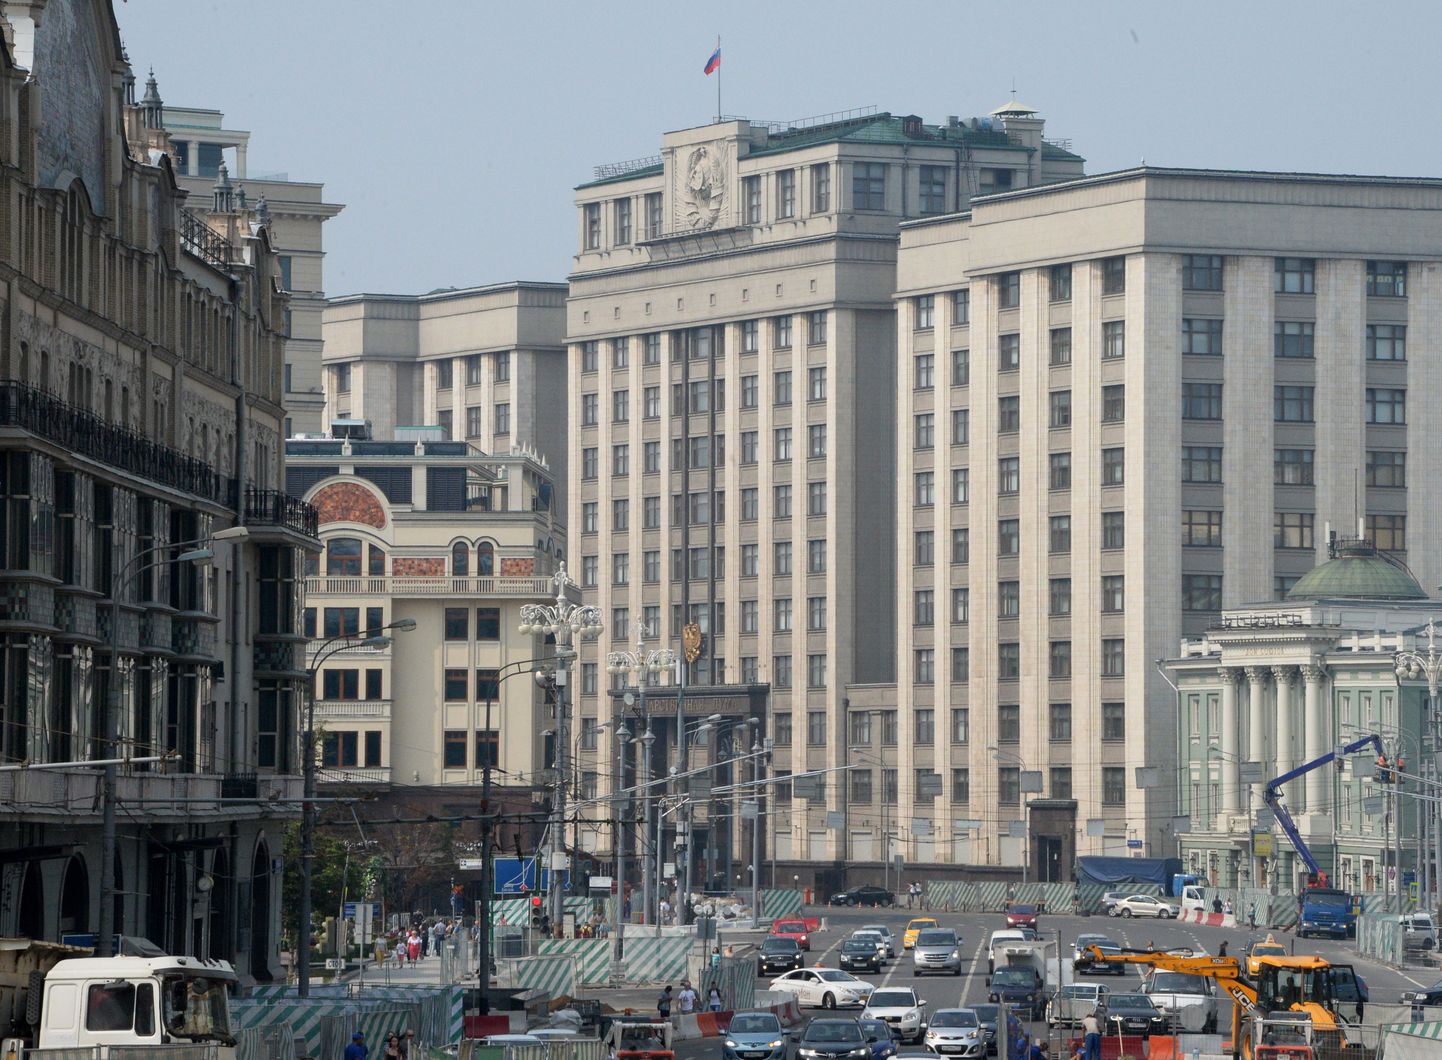 Vene riigiduuma hoone Moskvas.